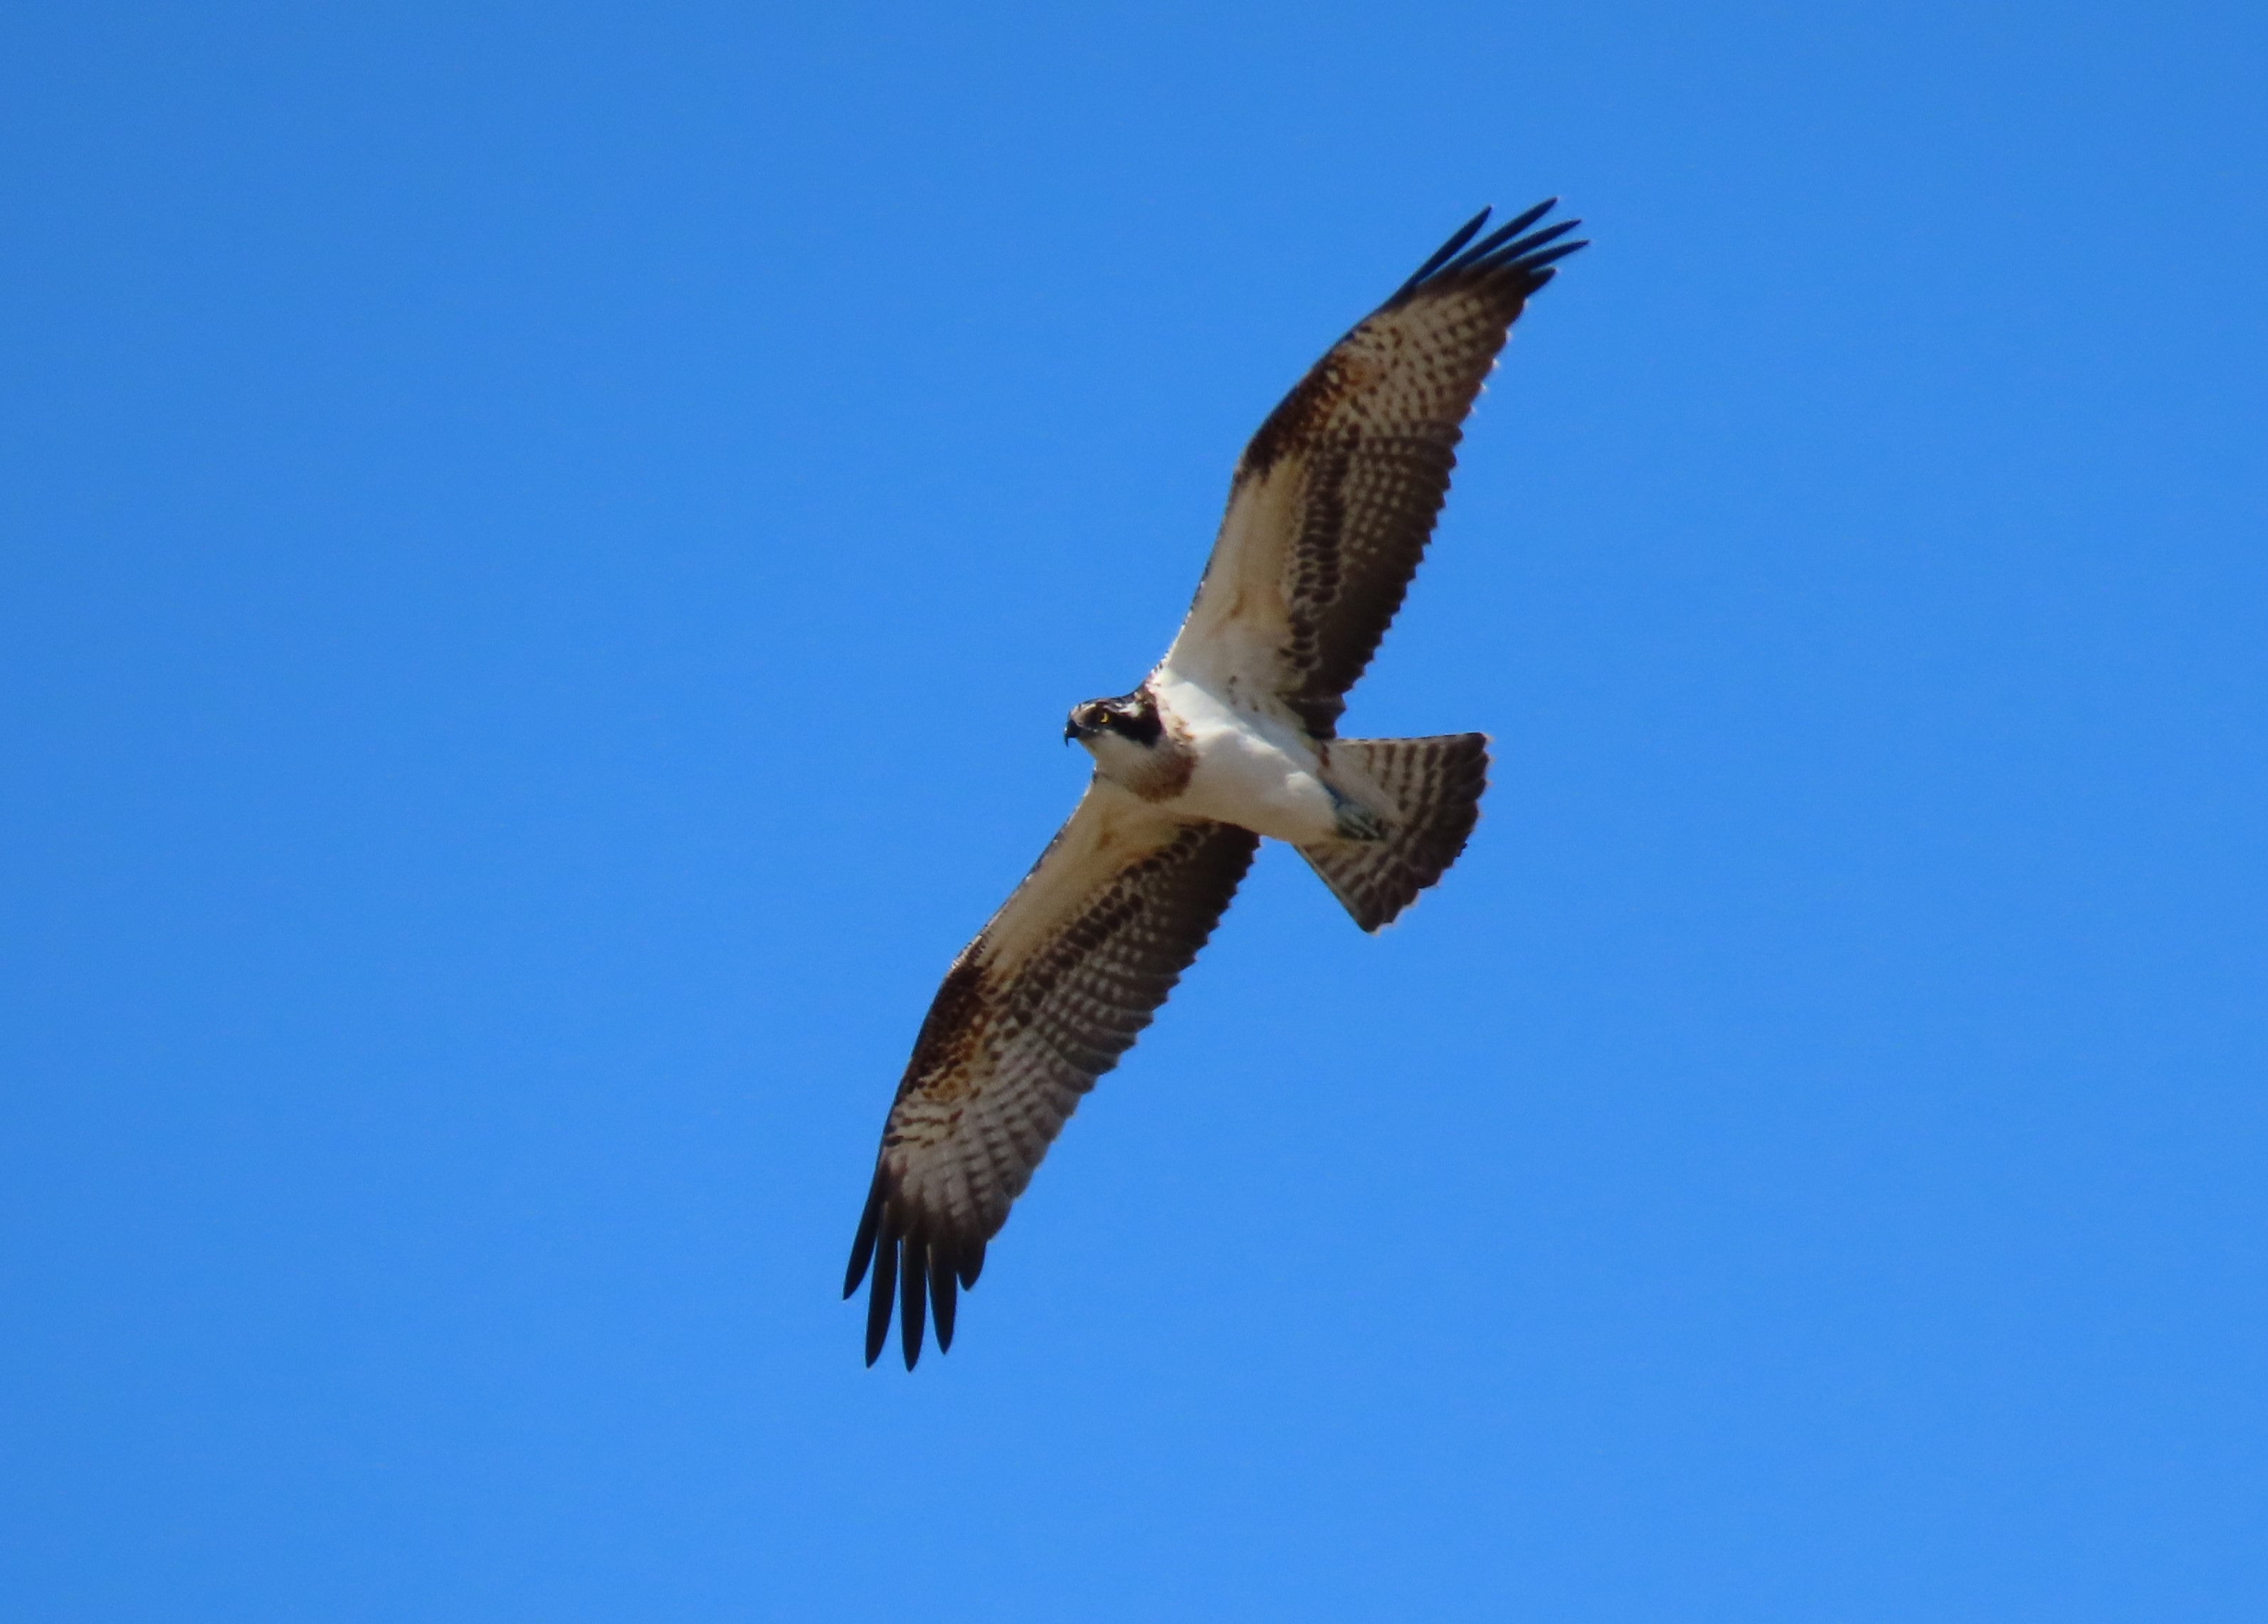 Osprey in flight in blue sky